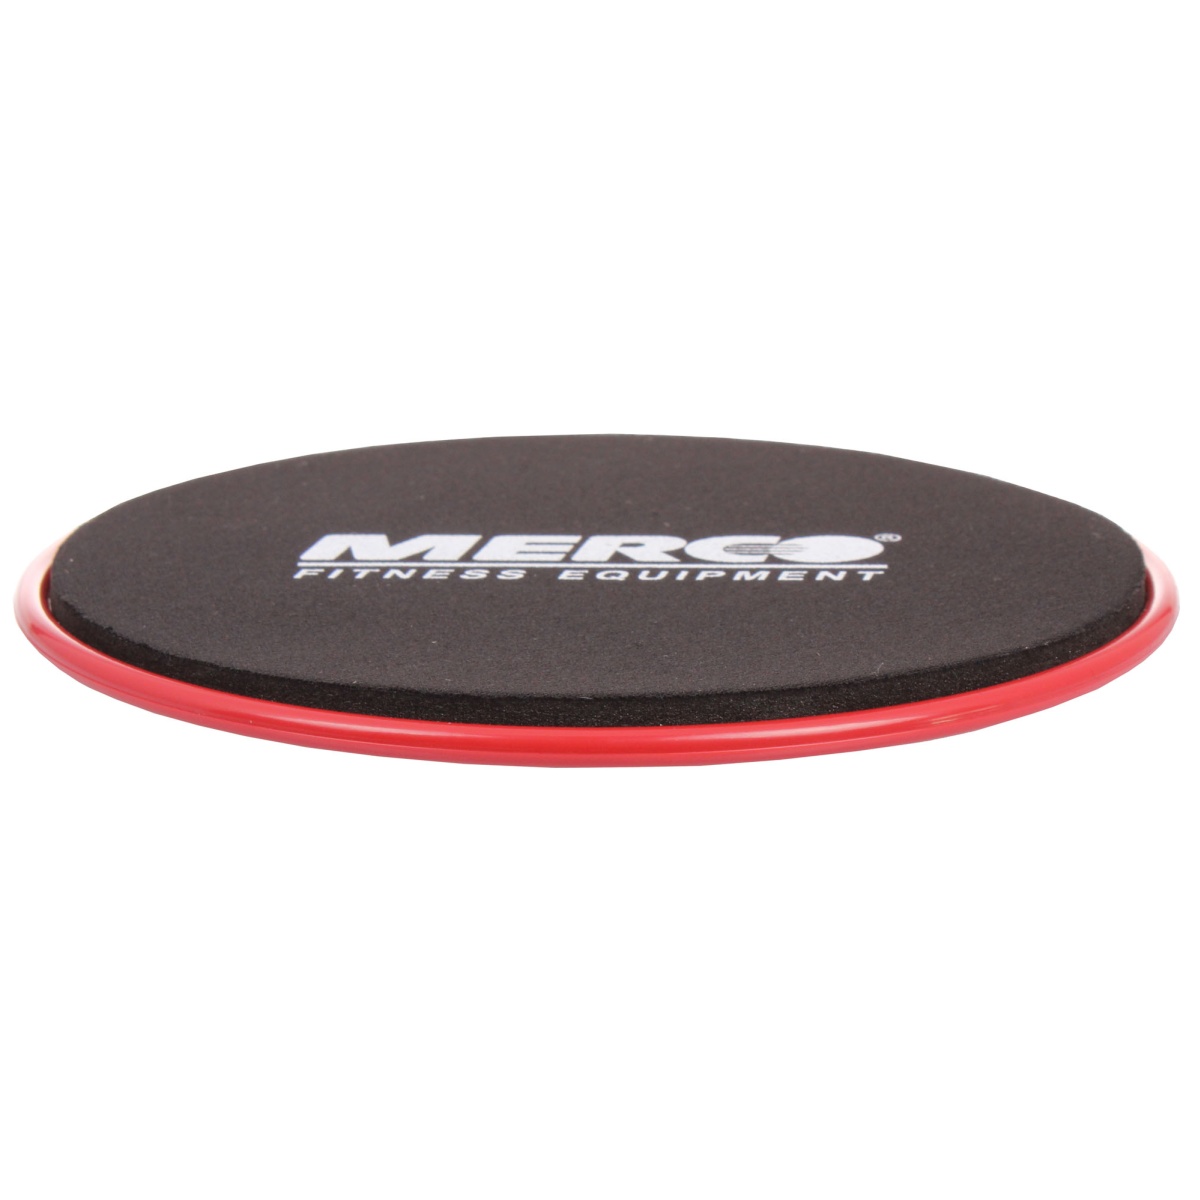 E-shop Merco Gliding Discs